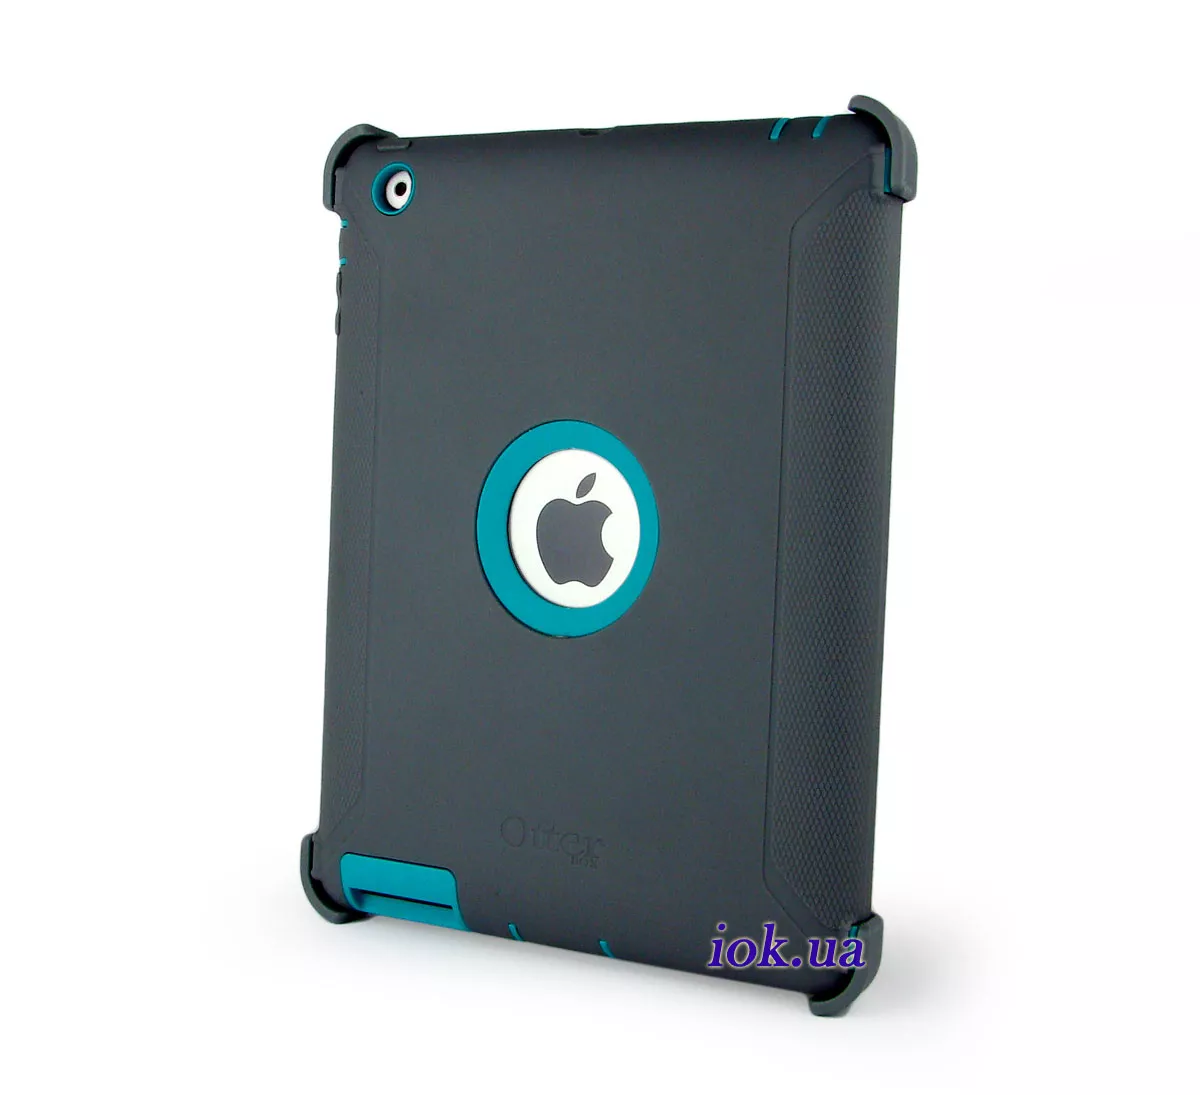 Бирюзовый бронированный чехол Otterbox для iPad 2/3/4